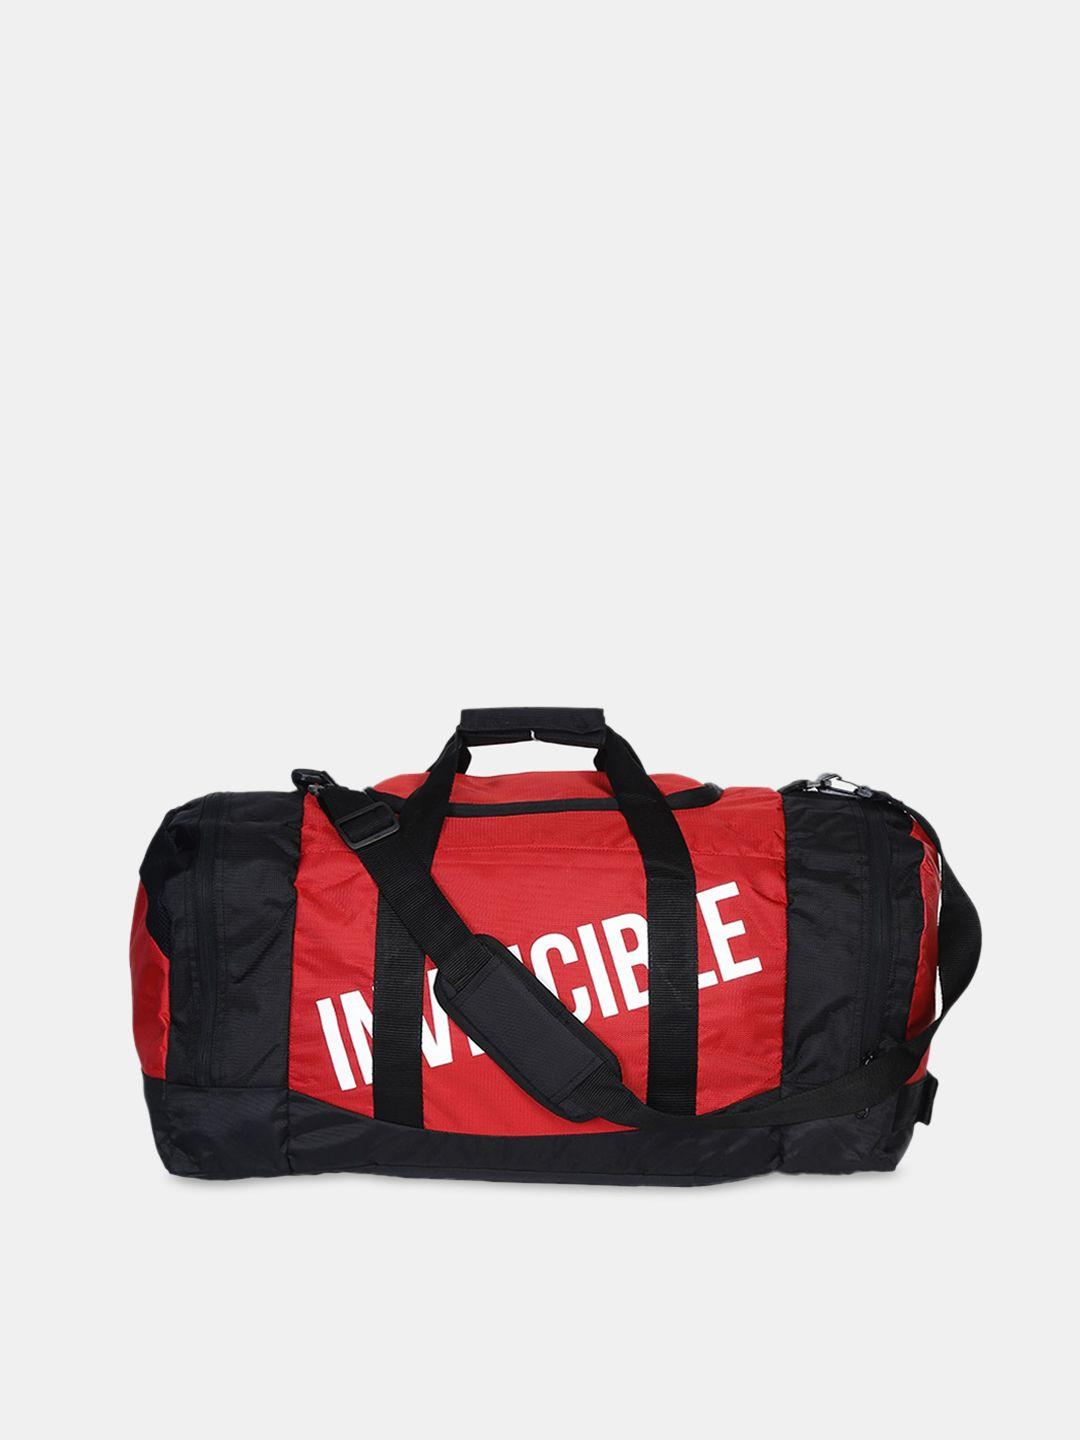 invincible red & black printed large duffle bag 54 l